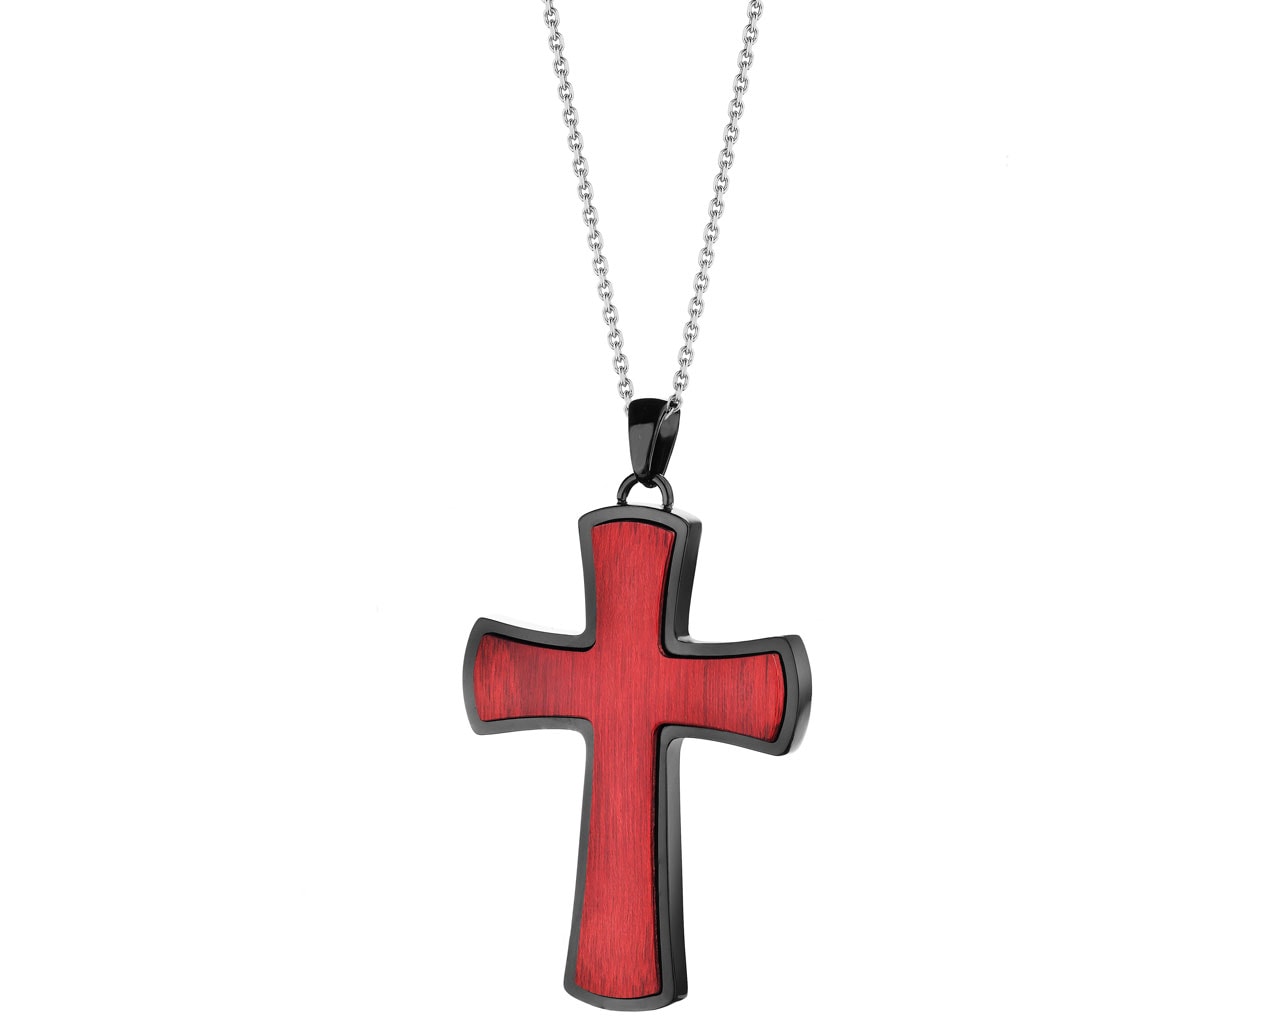 Přívěsek - kříž s ušlechtilé oceli s dřevem